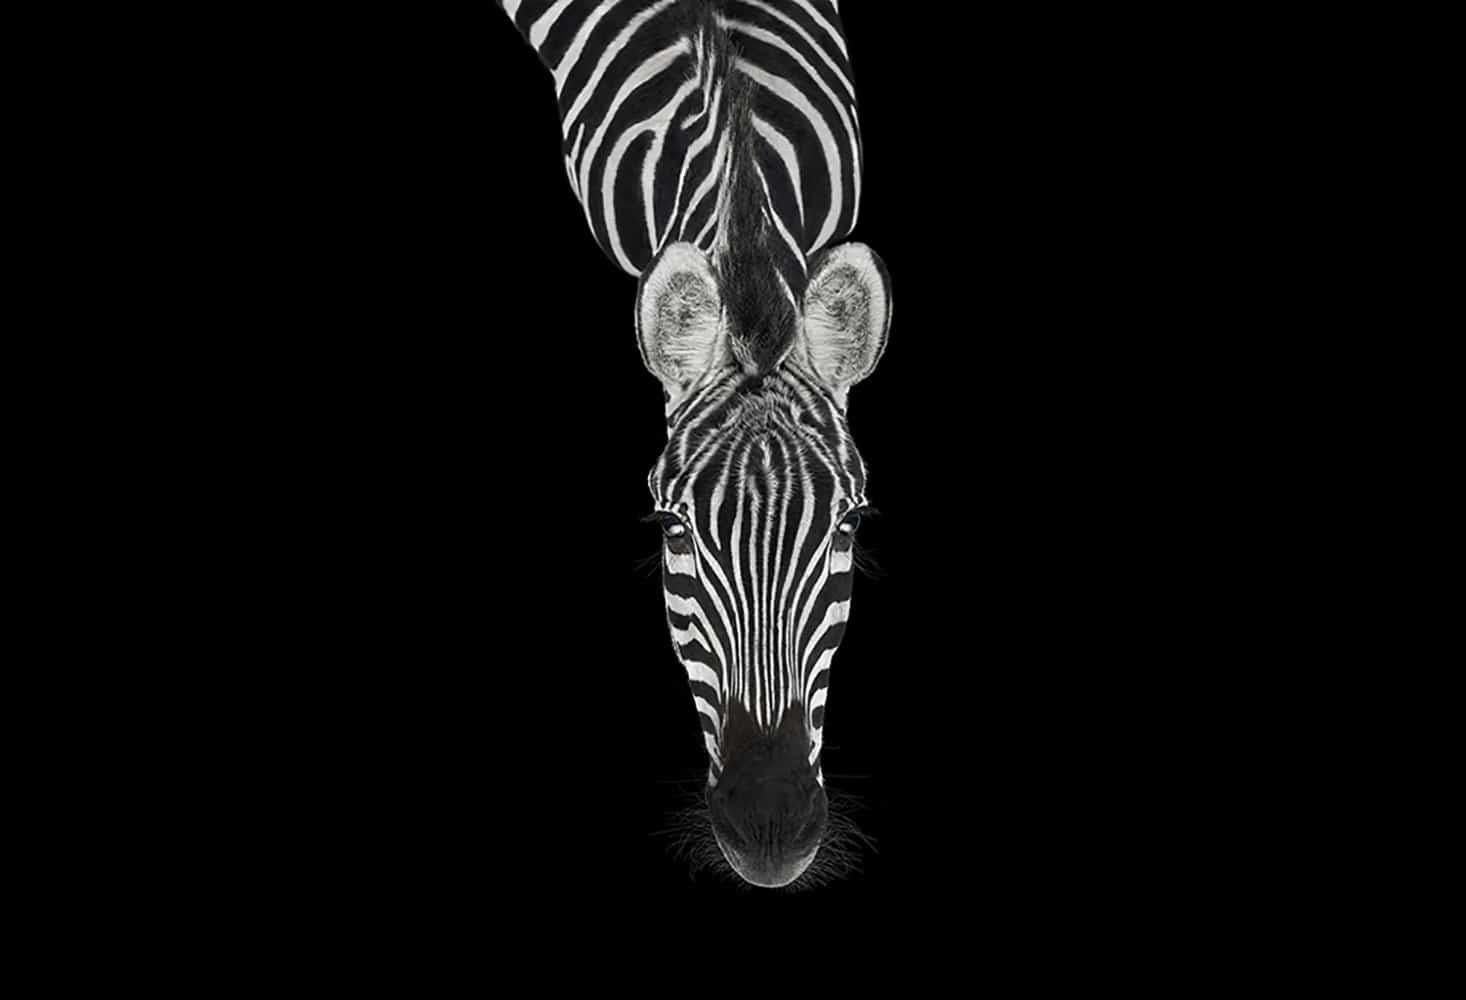 Zebra #3, Los Angeles, CA, 2010" ist eine limitierte Auflage eines Fotos des zeitgenössischen Künstlers Brad Wilson aus der Serie "Affinity", die Studio-Porträts von Wildtieren zeigt. 

Dieses Foto wird nur als ungerahmter Abzug verkauft. Es ist in